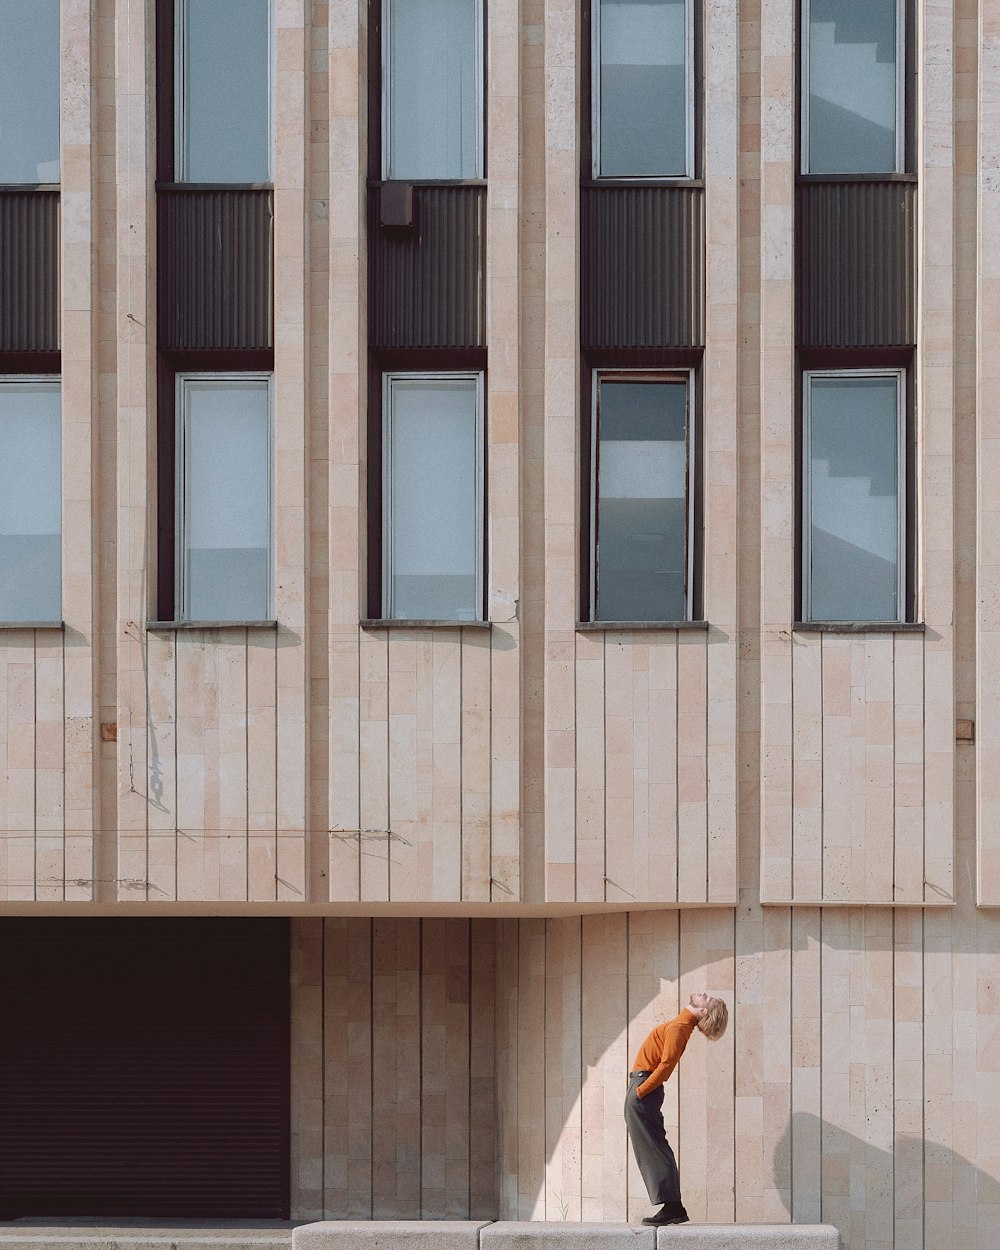 Persona con chaqueta naranja de pie frente al edificio marrón